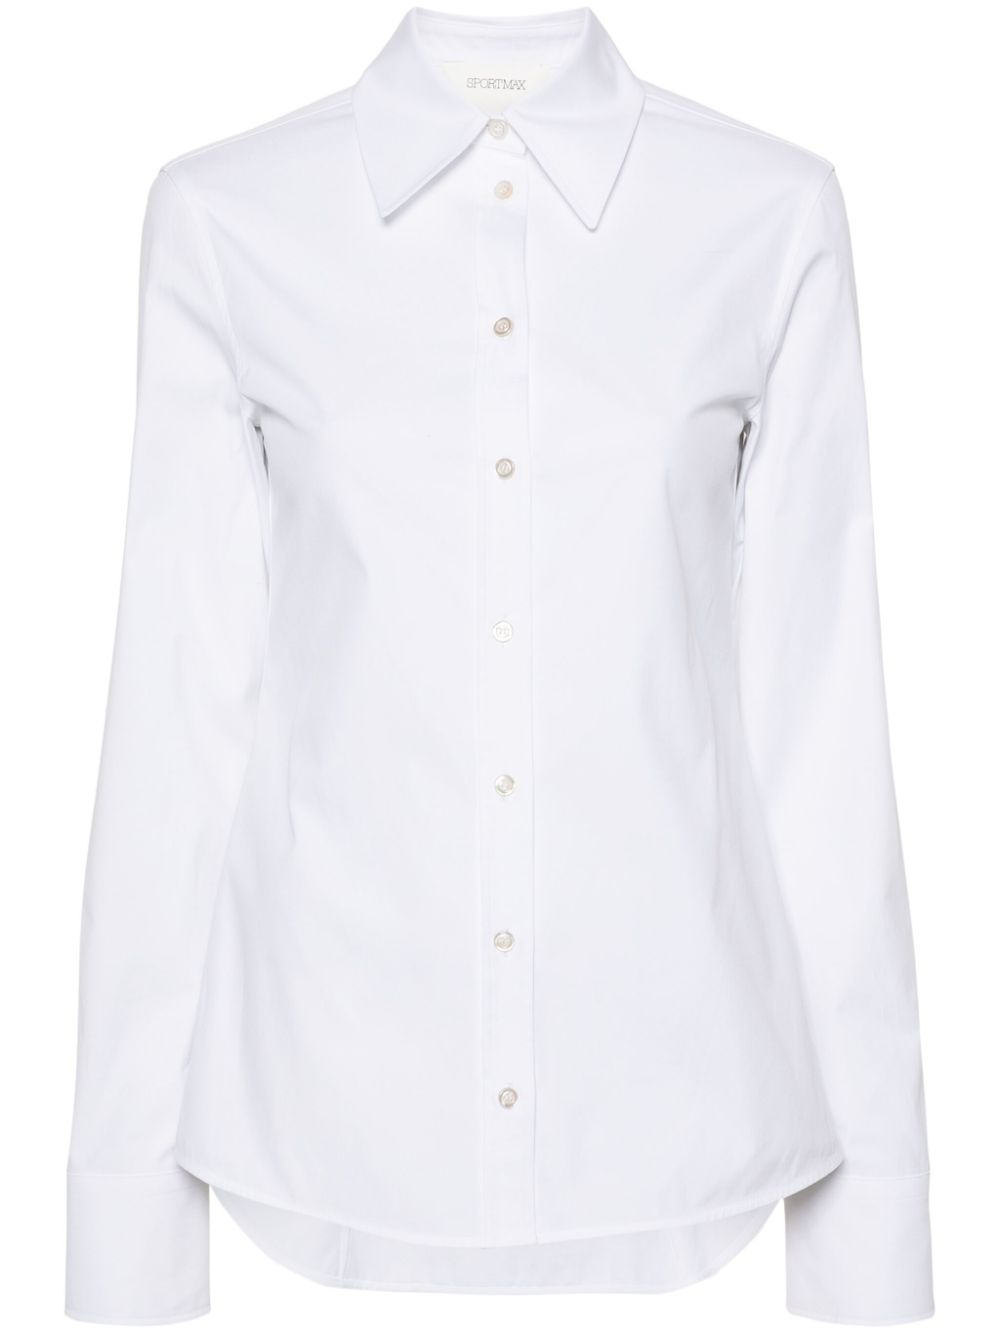 Plain cotton shirt<BR/><BR/><BR/>